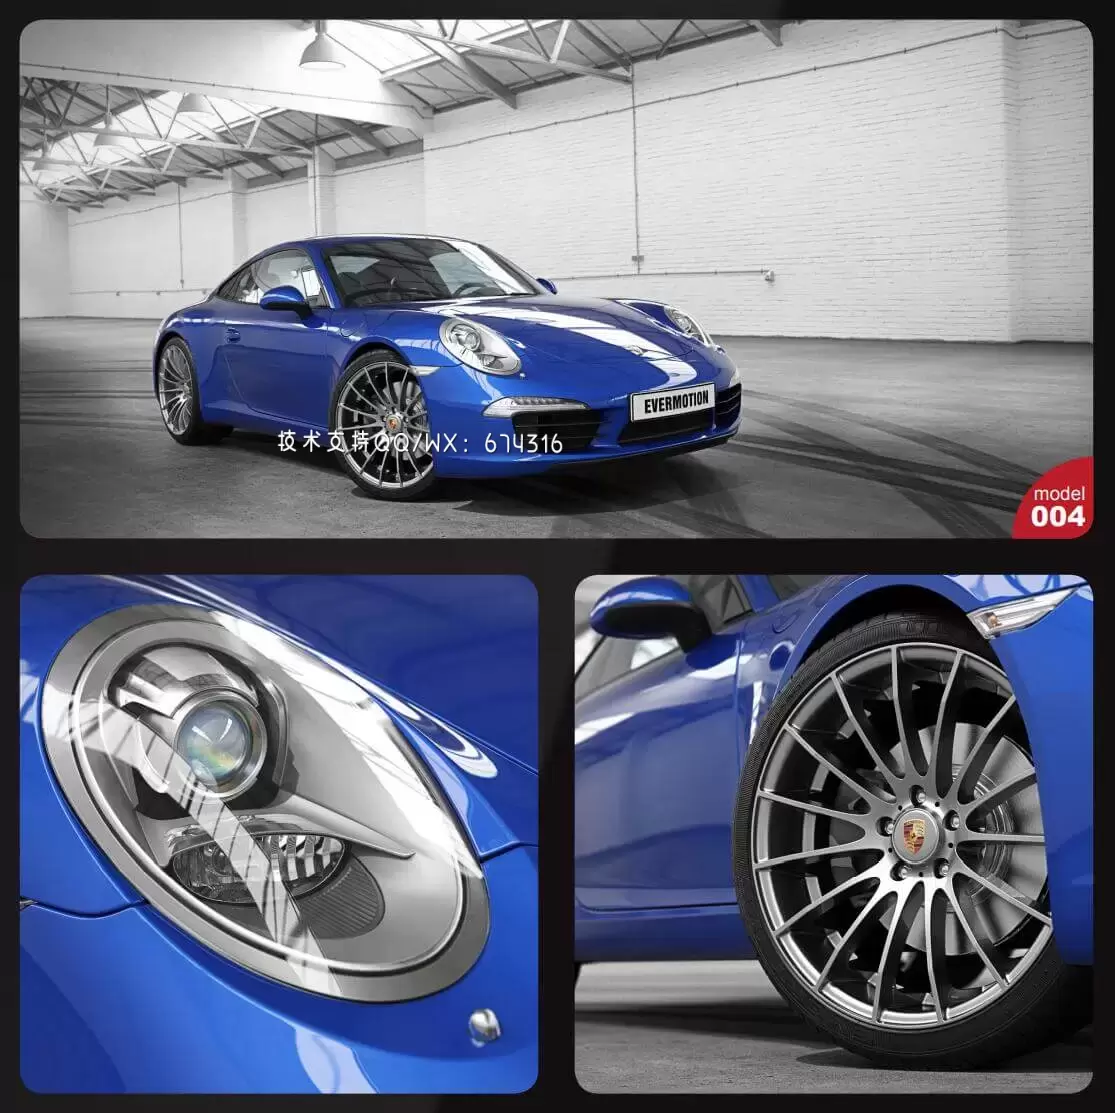 保时捷Porsche高端汽车3D模型下载 (C4D,FBX,OBJ,MAX)免费下载